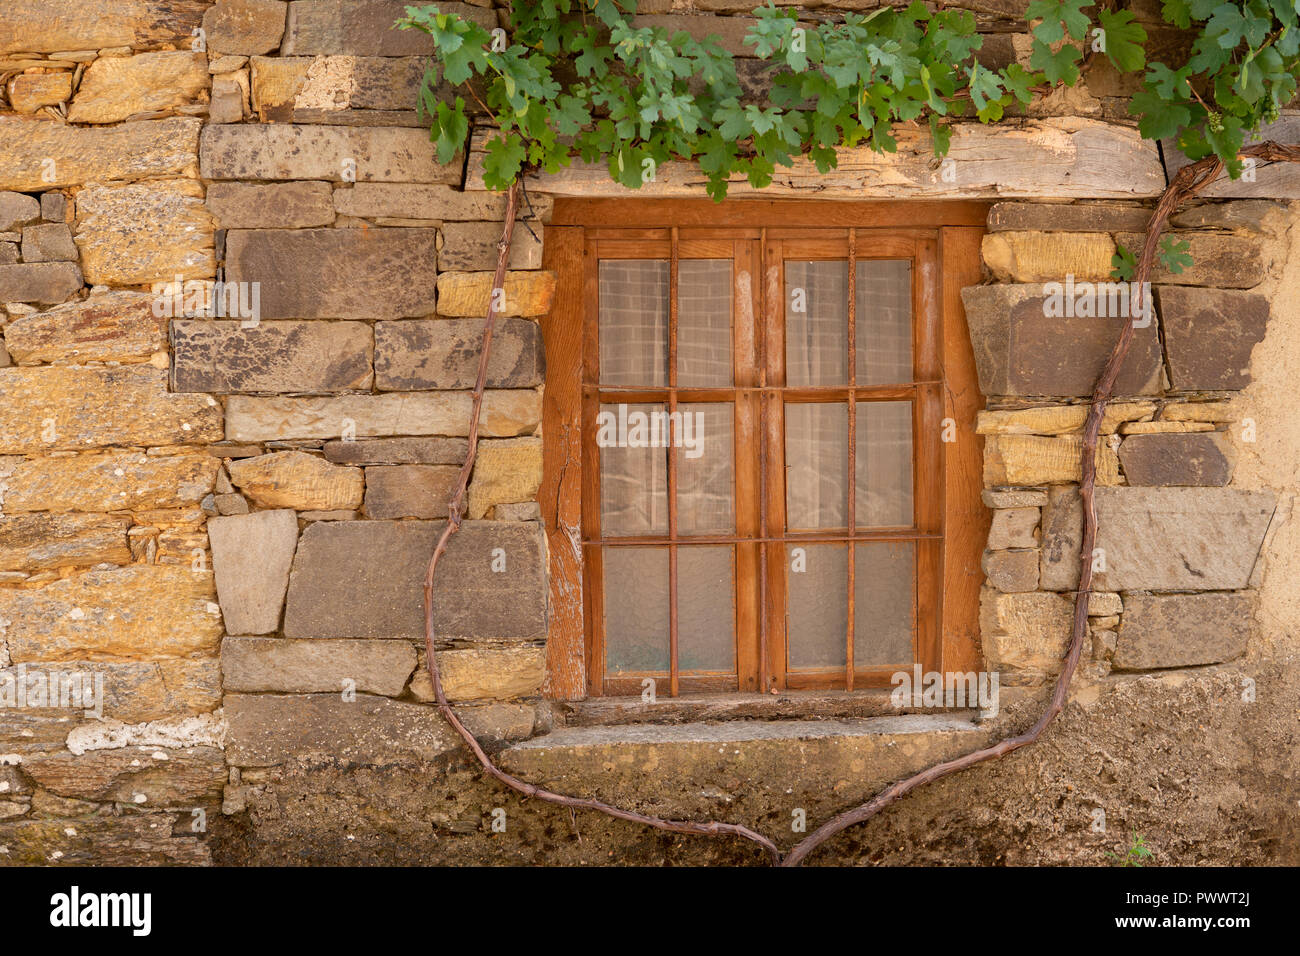 Holz- Fenster in der Fassade aus Stein mit weinstock Arbor Stockfotografie  - Alamy